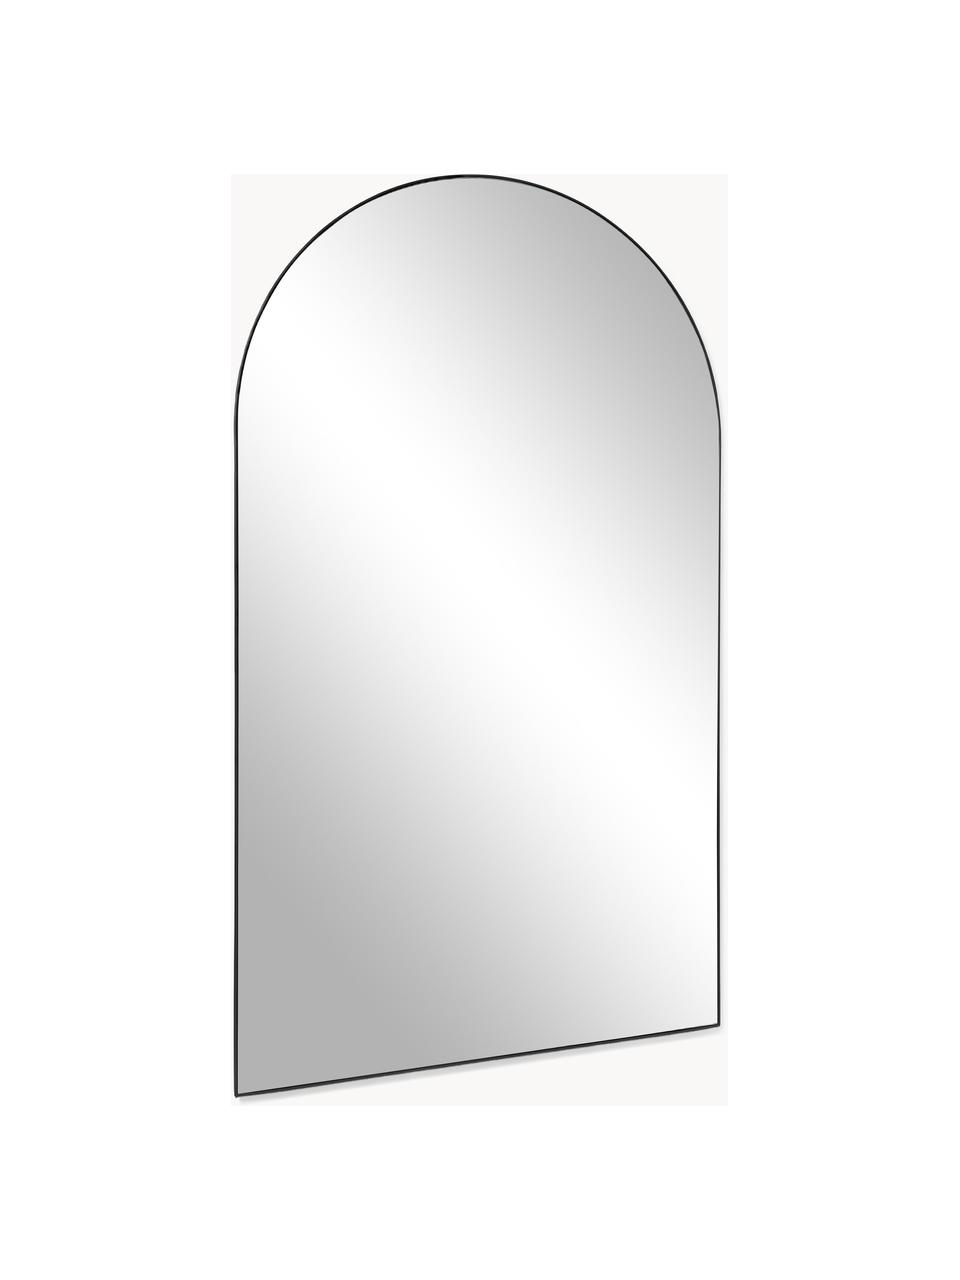 Grand miroir adossé Finley, Noir, haut. 74 cm